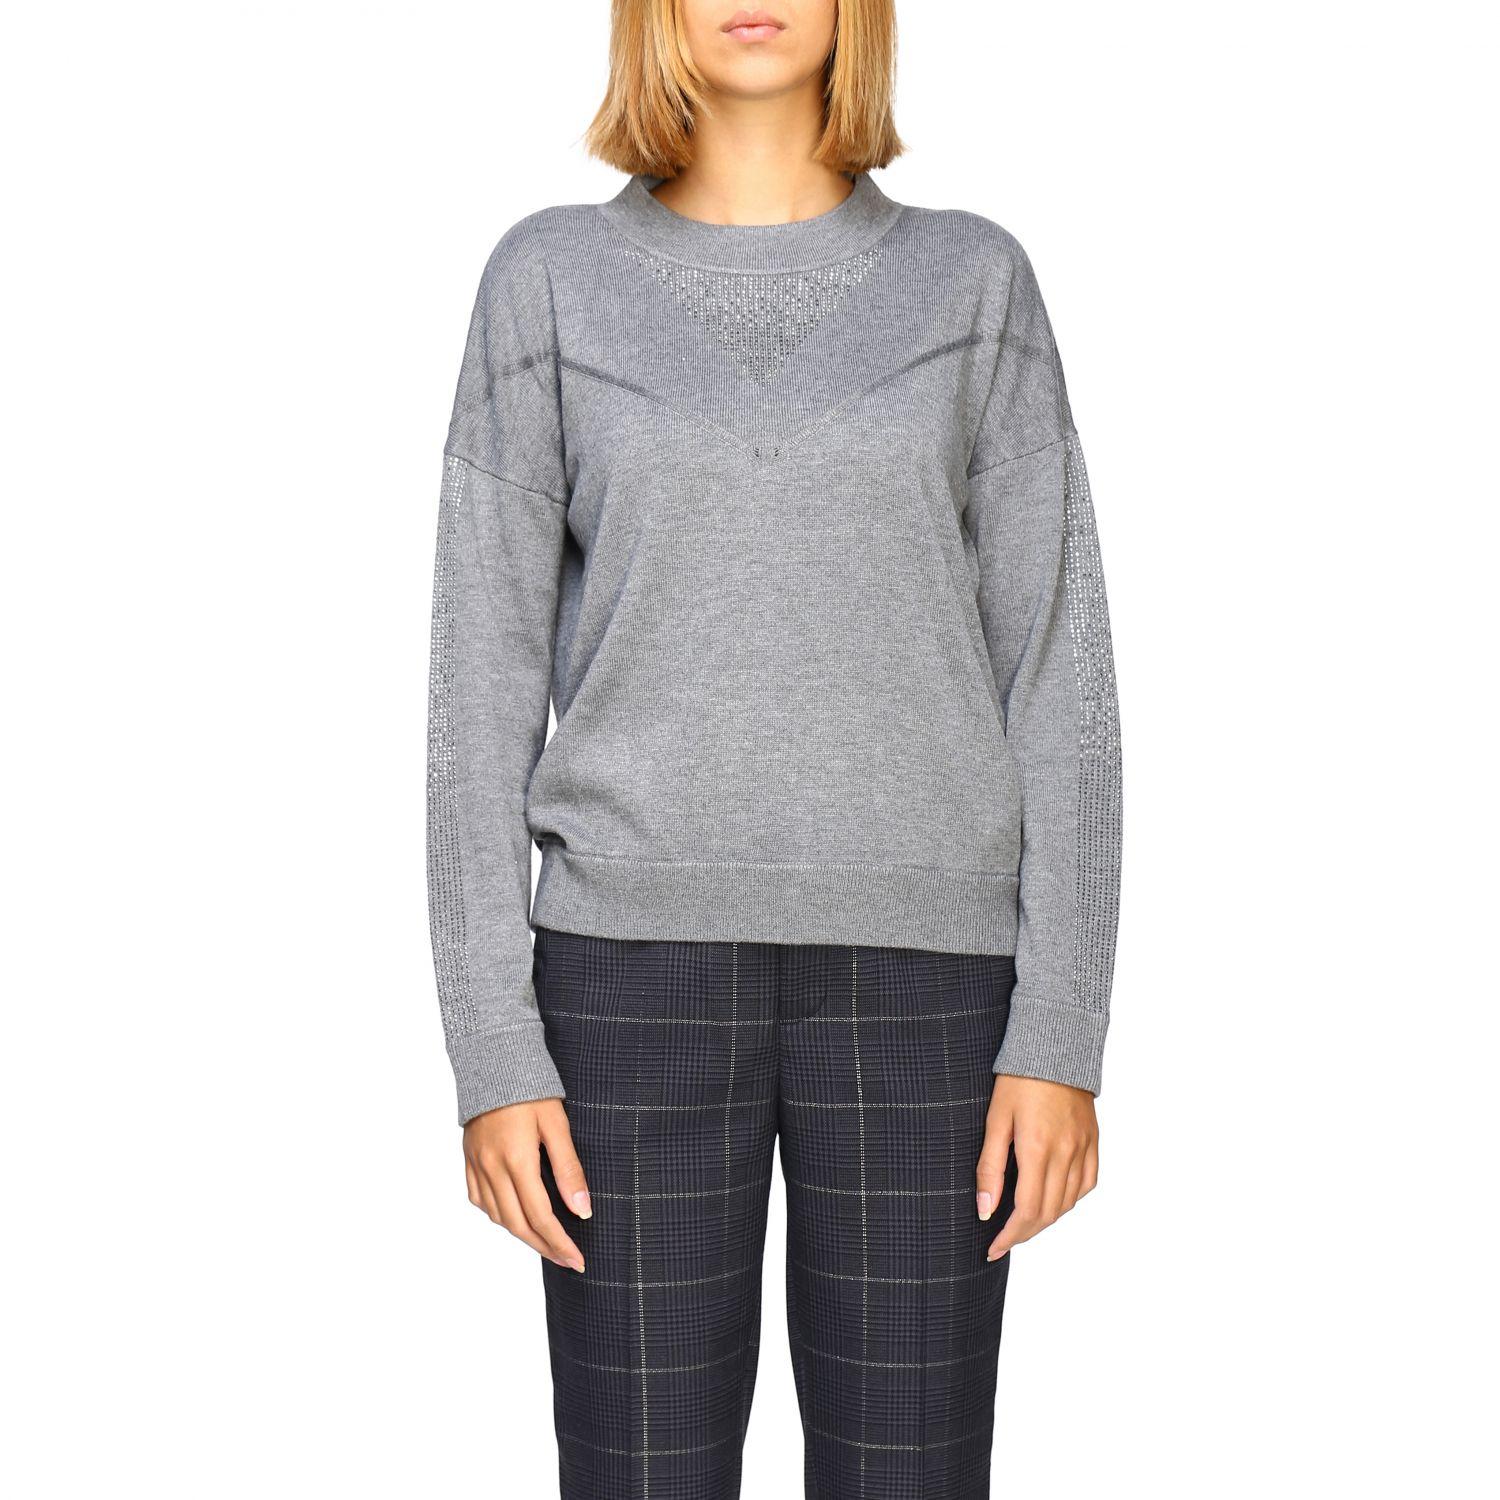 Liu Jo Synthetic Women's Sweater in Grey (Gray) - Lyst